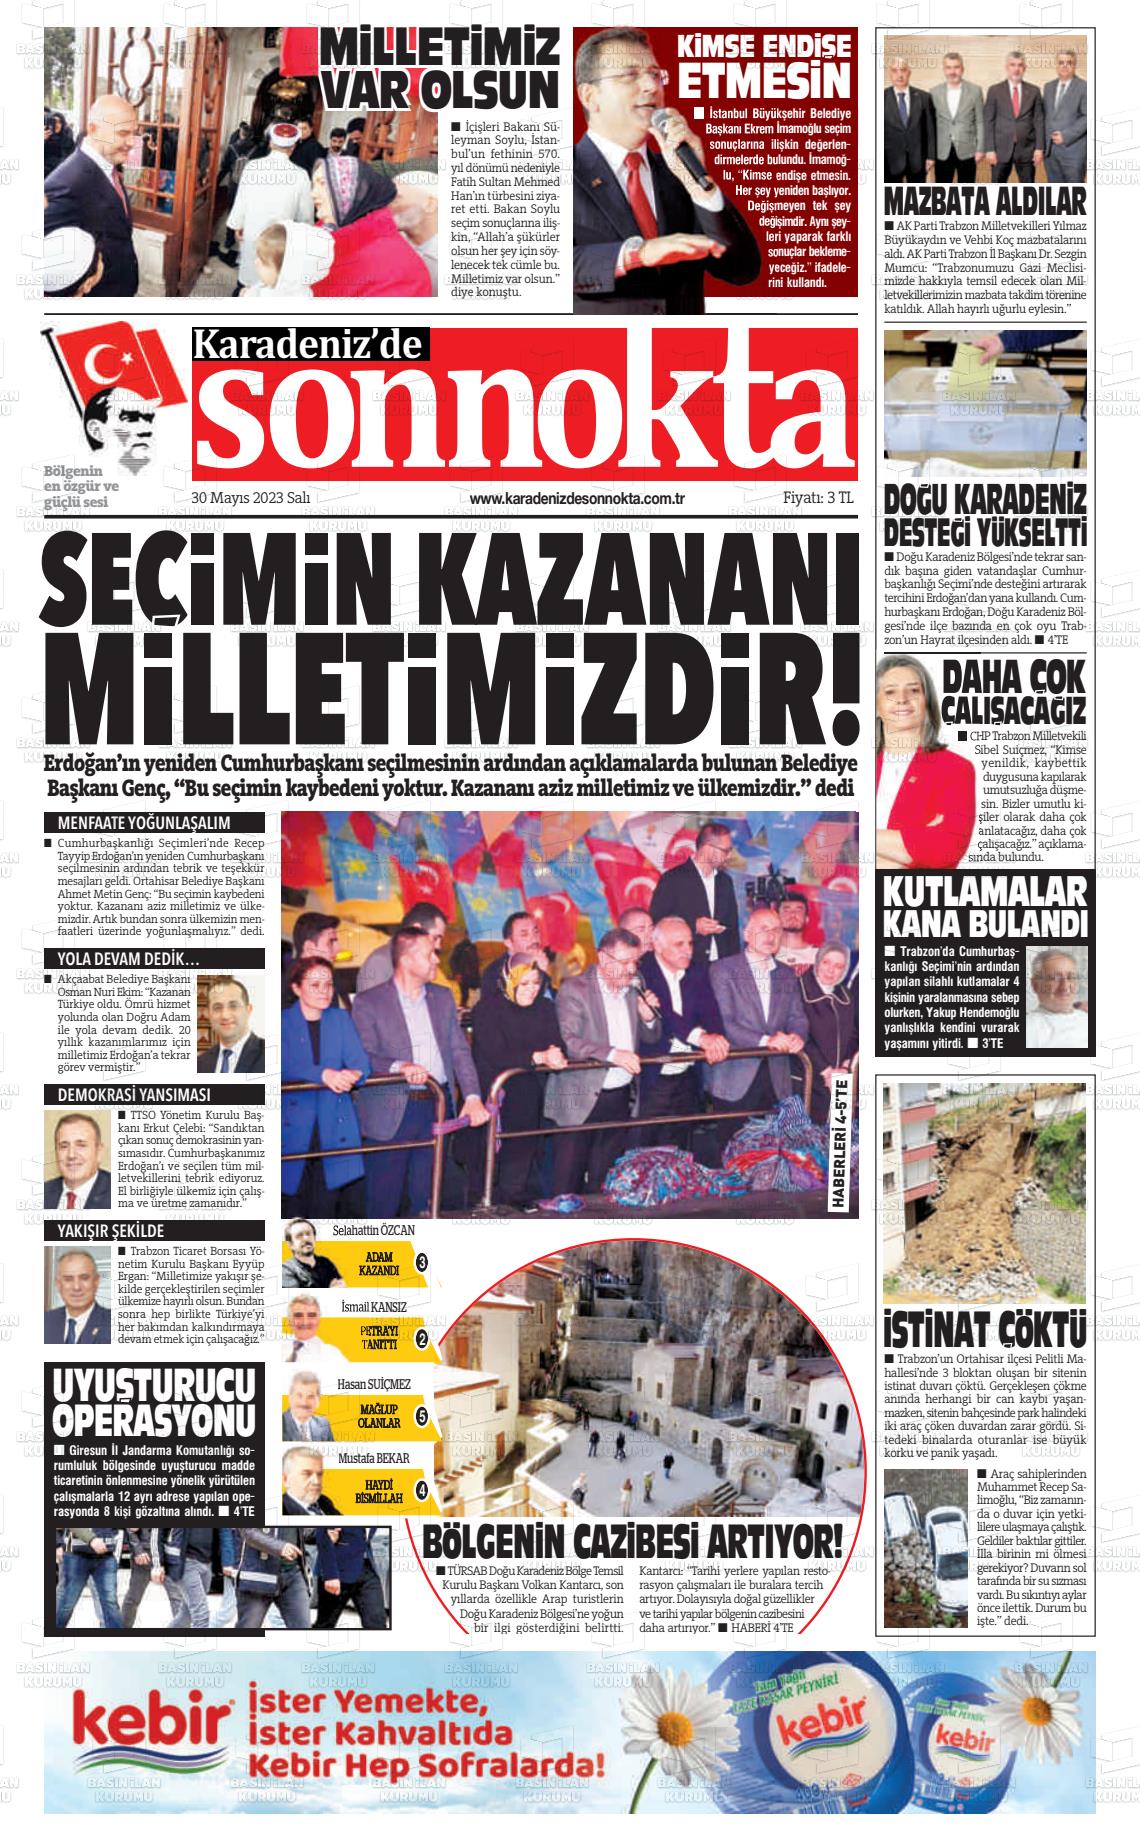 30 Mayıs 2023 Karadeniz'de Sonnokta Gazete Manşeti